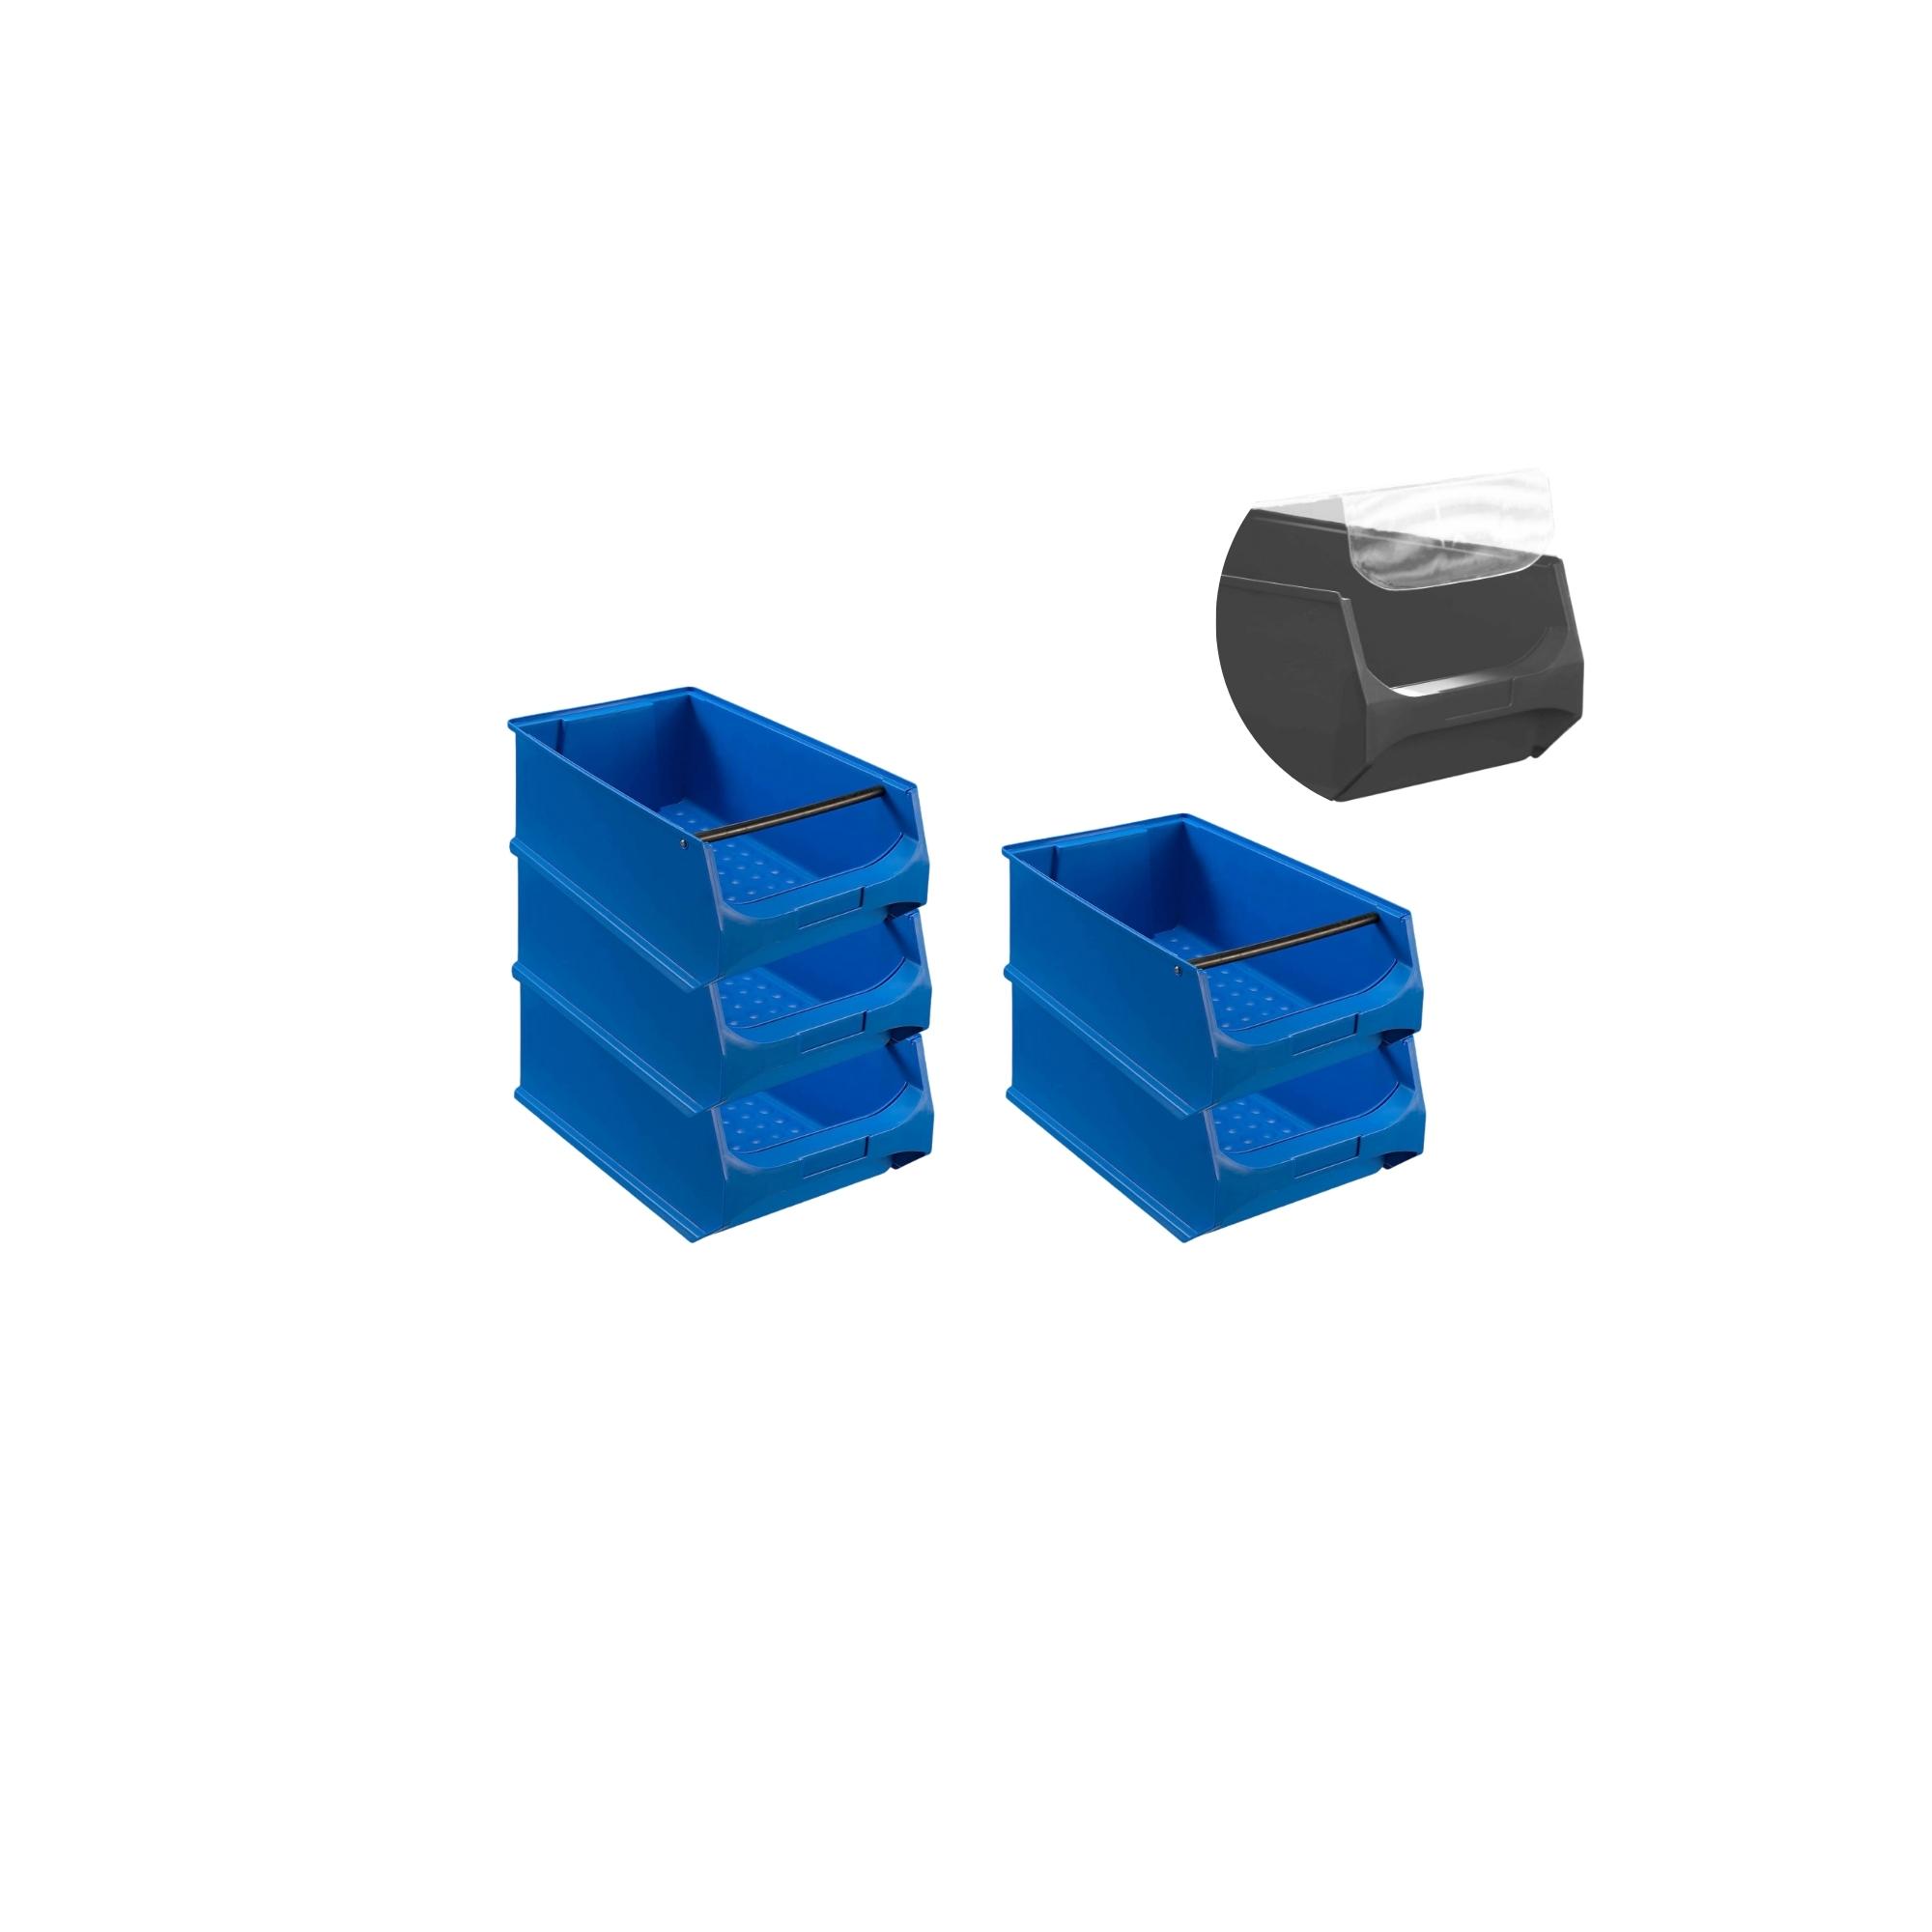 SparSet 5x Blaue Sichtlagerbox 5.1 mit Griffstange & Abdeckung | HxBxT 20x30x50cm | 21,8 Liter | Sichtlagerbehälter, Sichtlagerkasten, Sichtlagerkastensortiment, Sortierbehälter